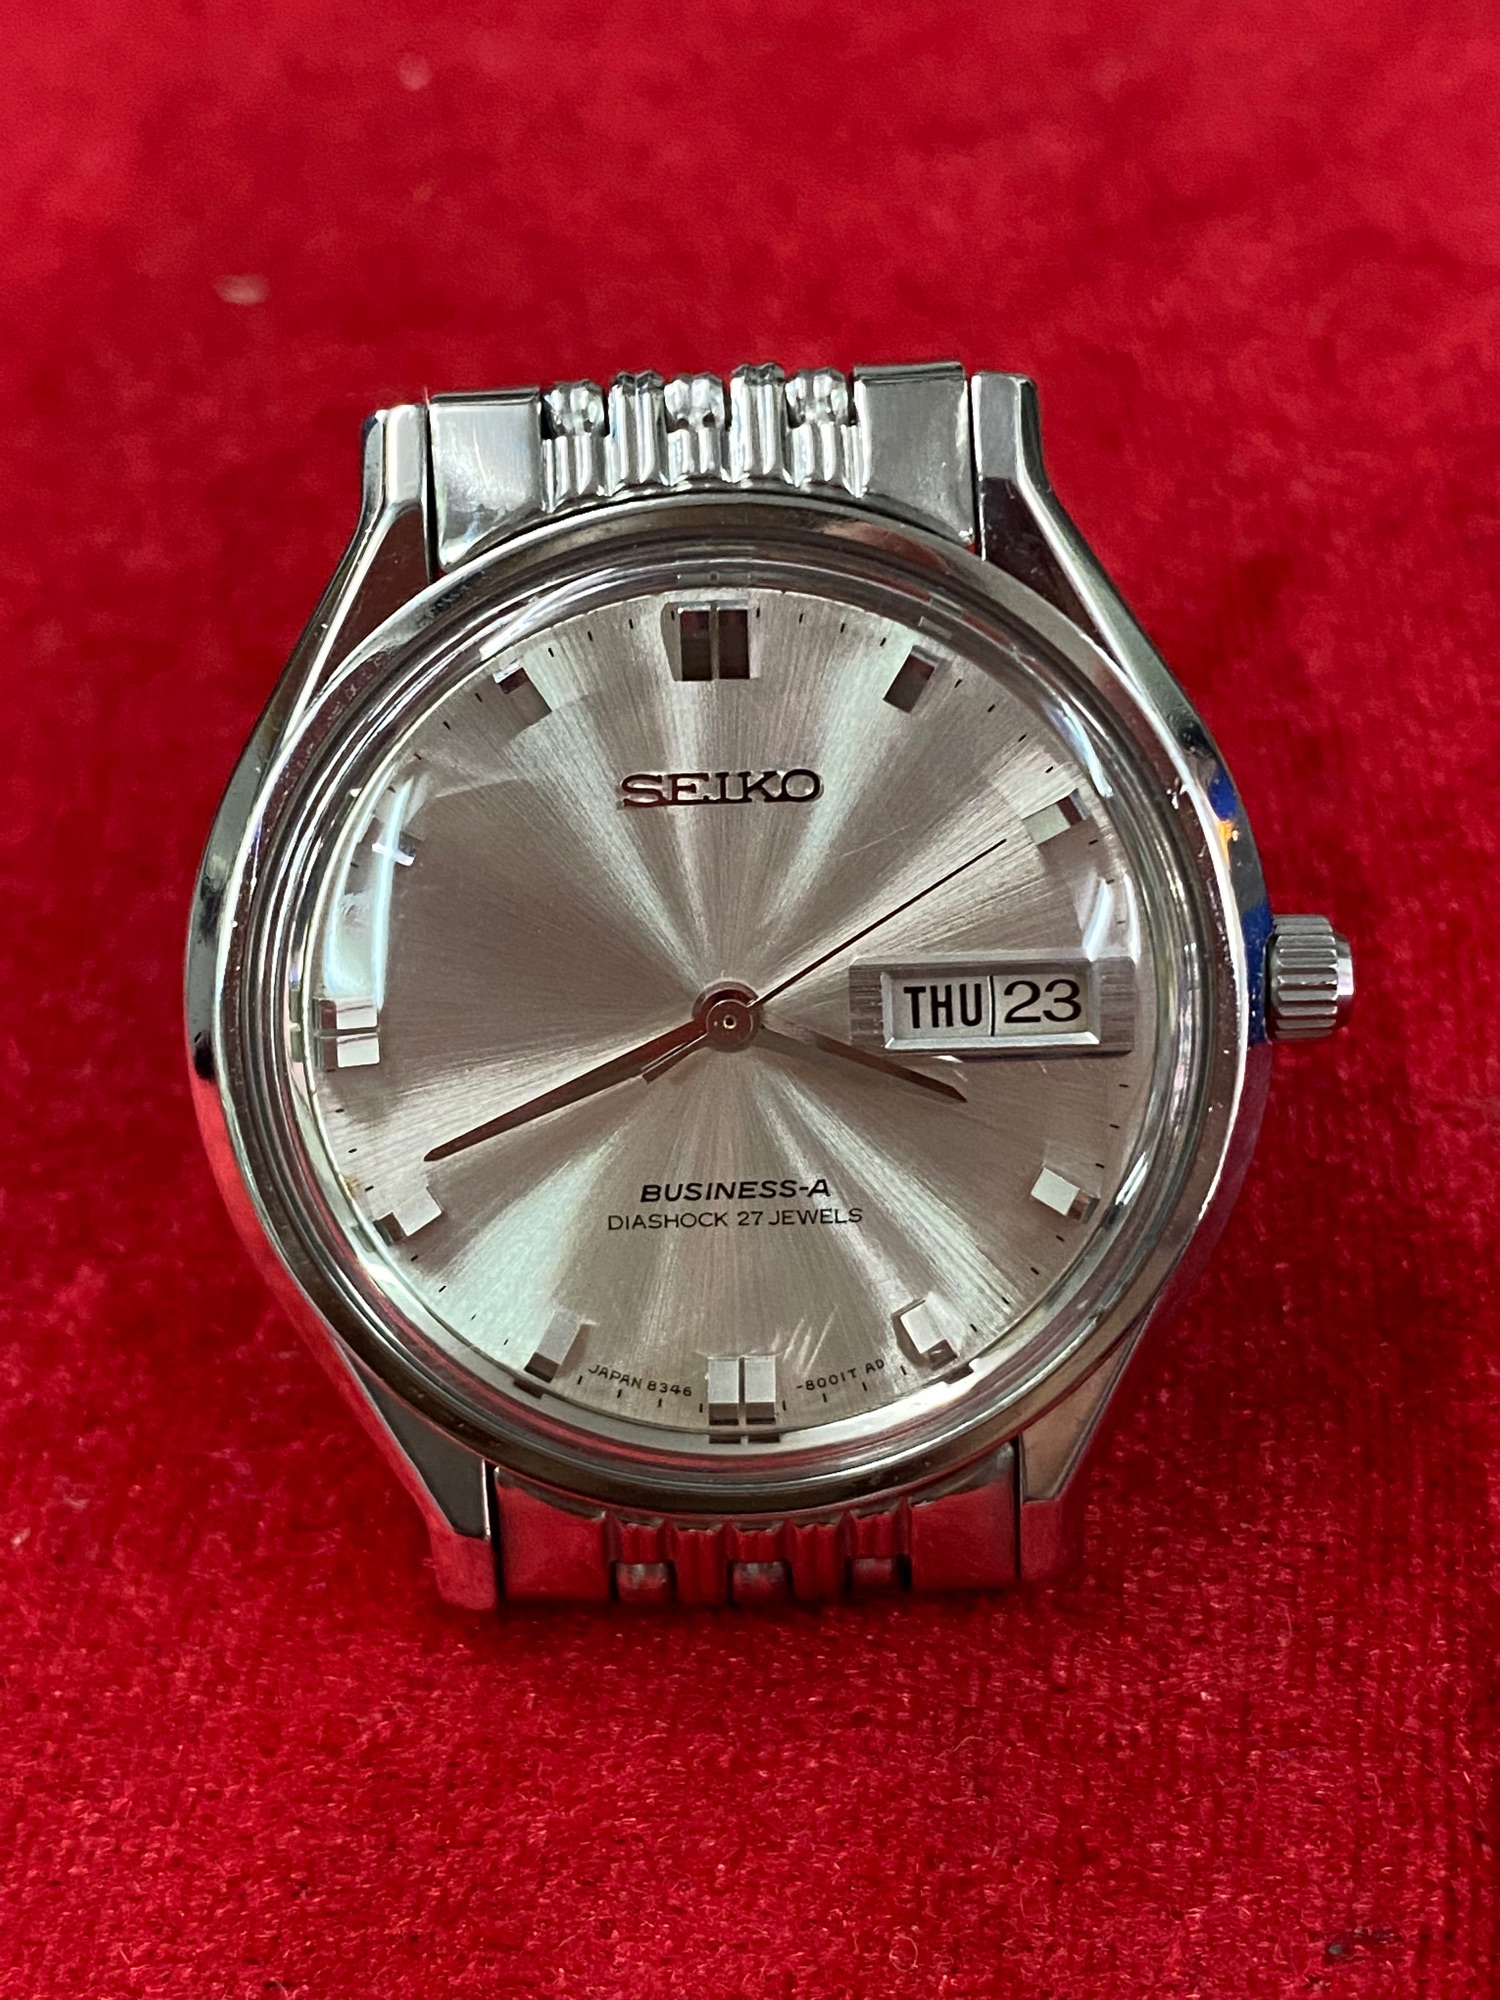 SEIKO BUSINESS-A Diashock 27 jewels Automatic ตัวเรือนสแตนเลส นาฬิกาผู้ชาย  นาฬิกามือสองของแท้ 